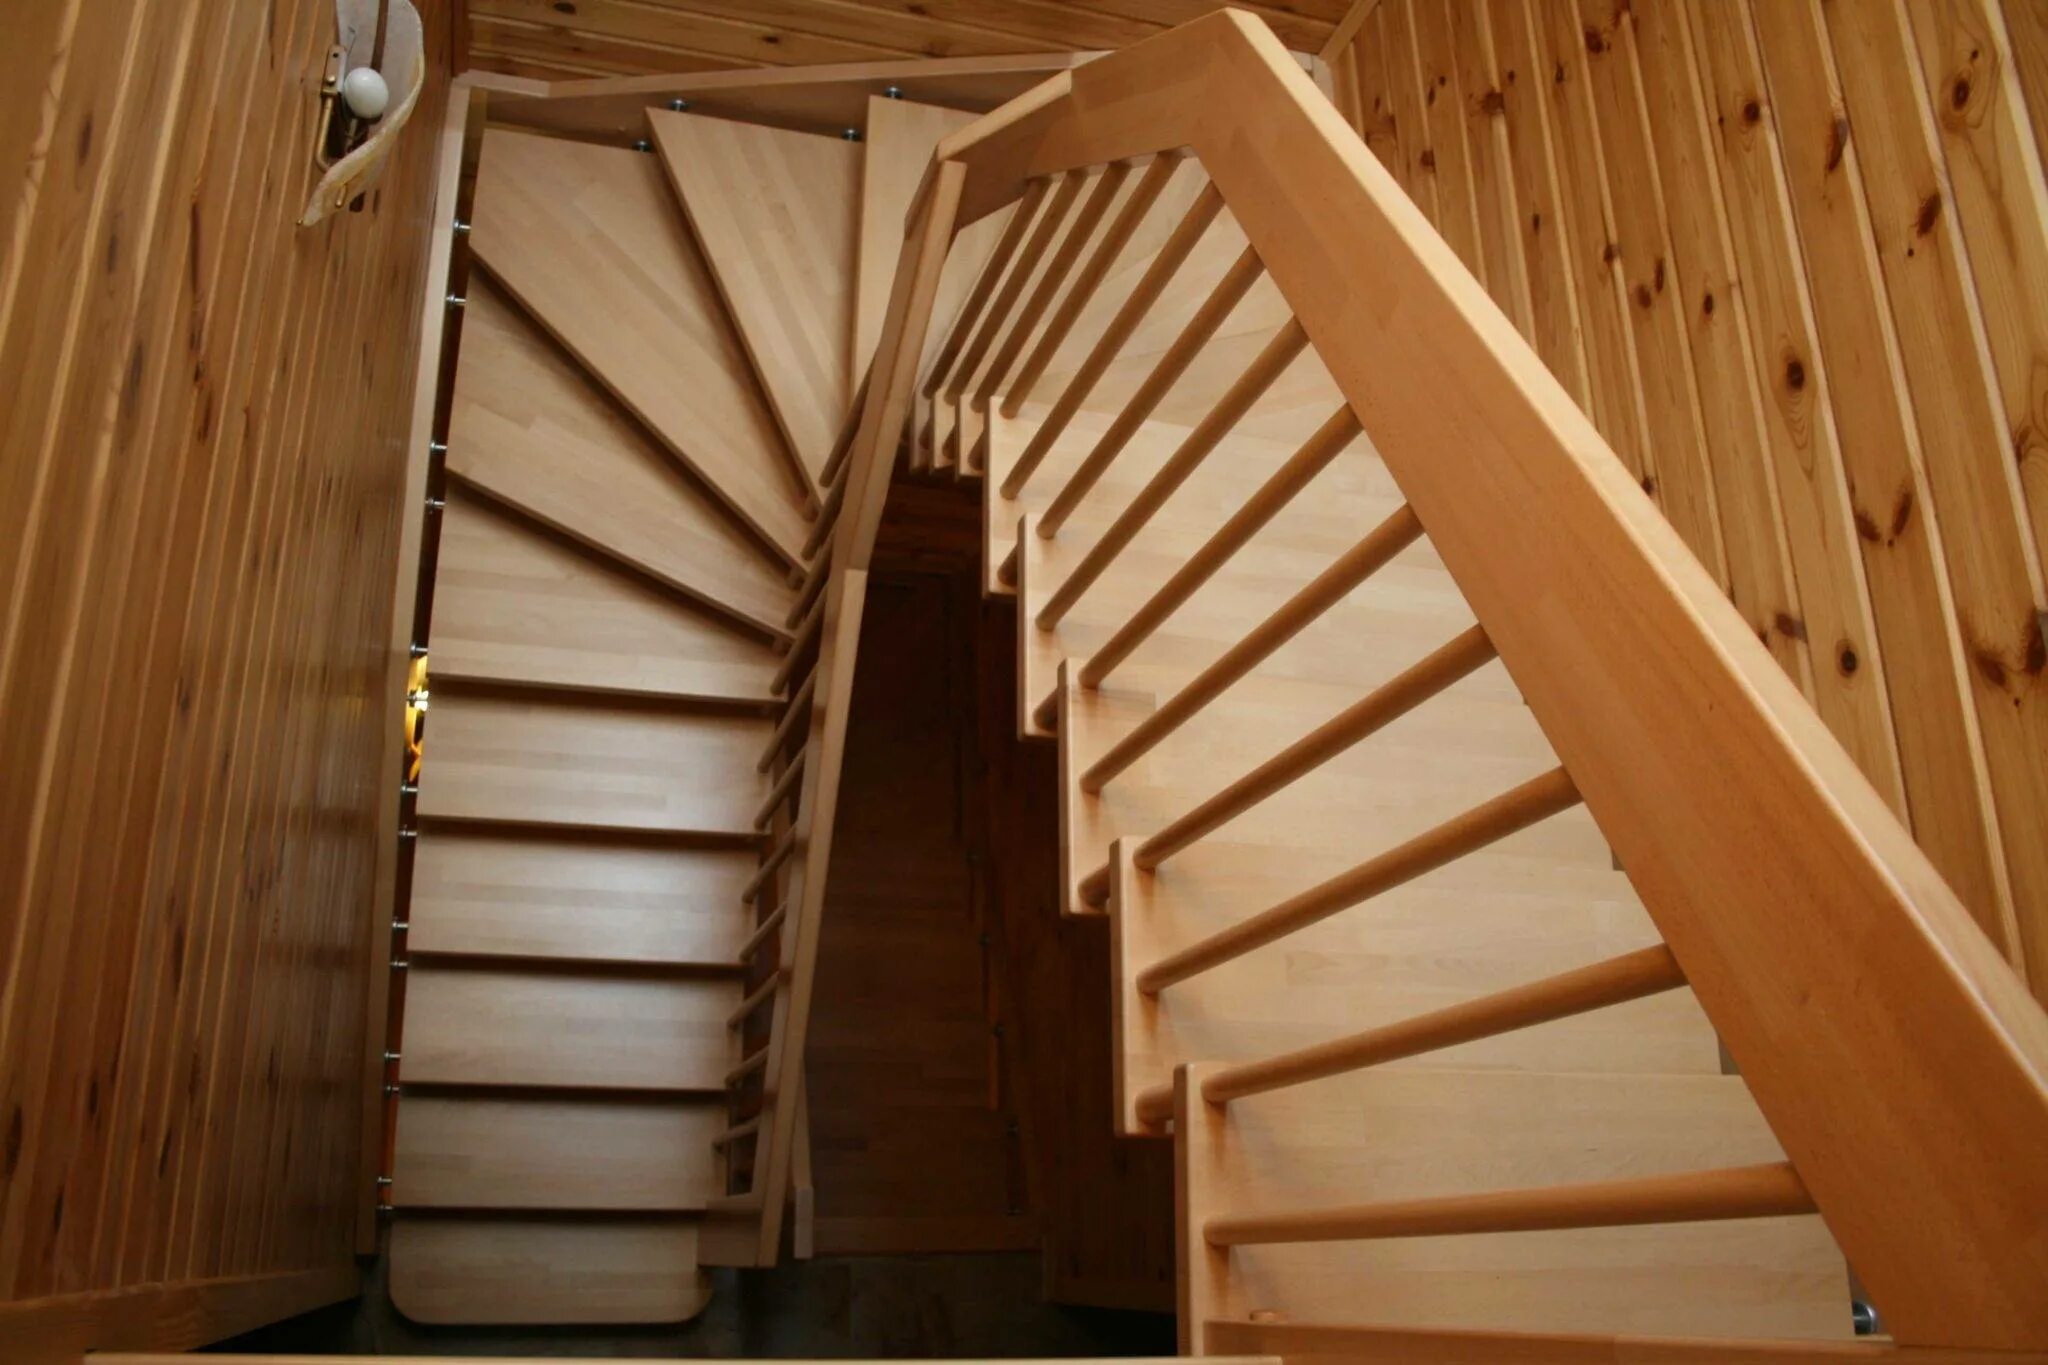 Забежные лестницы второй этаж